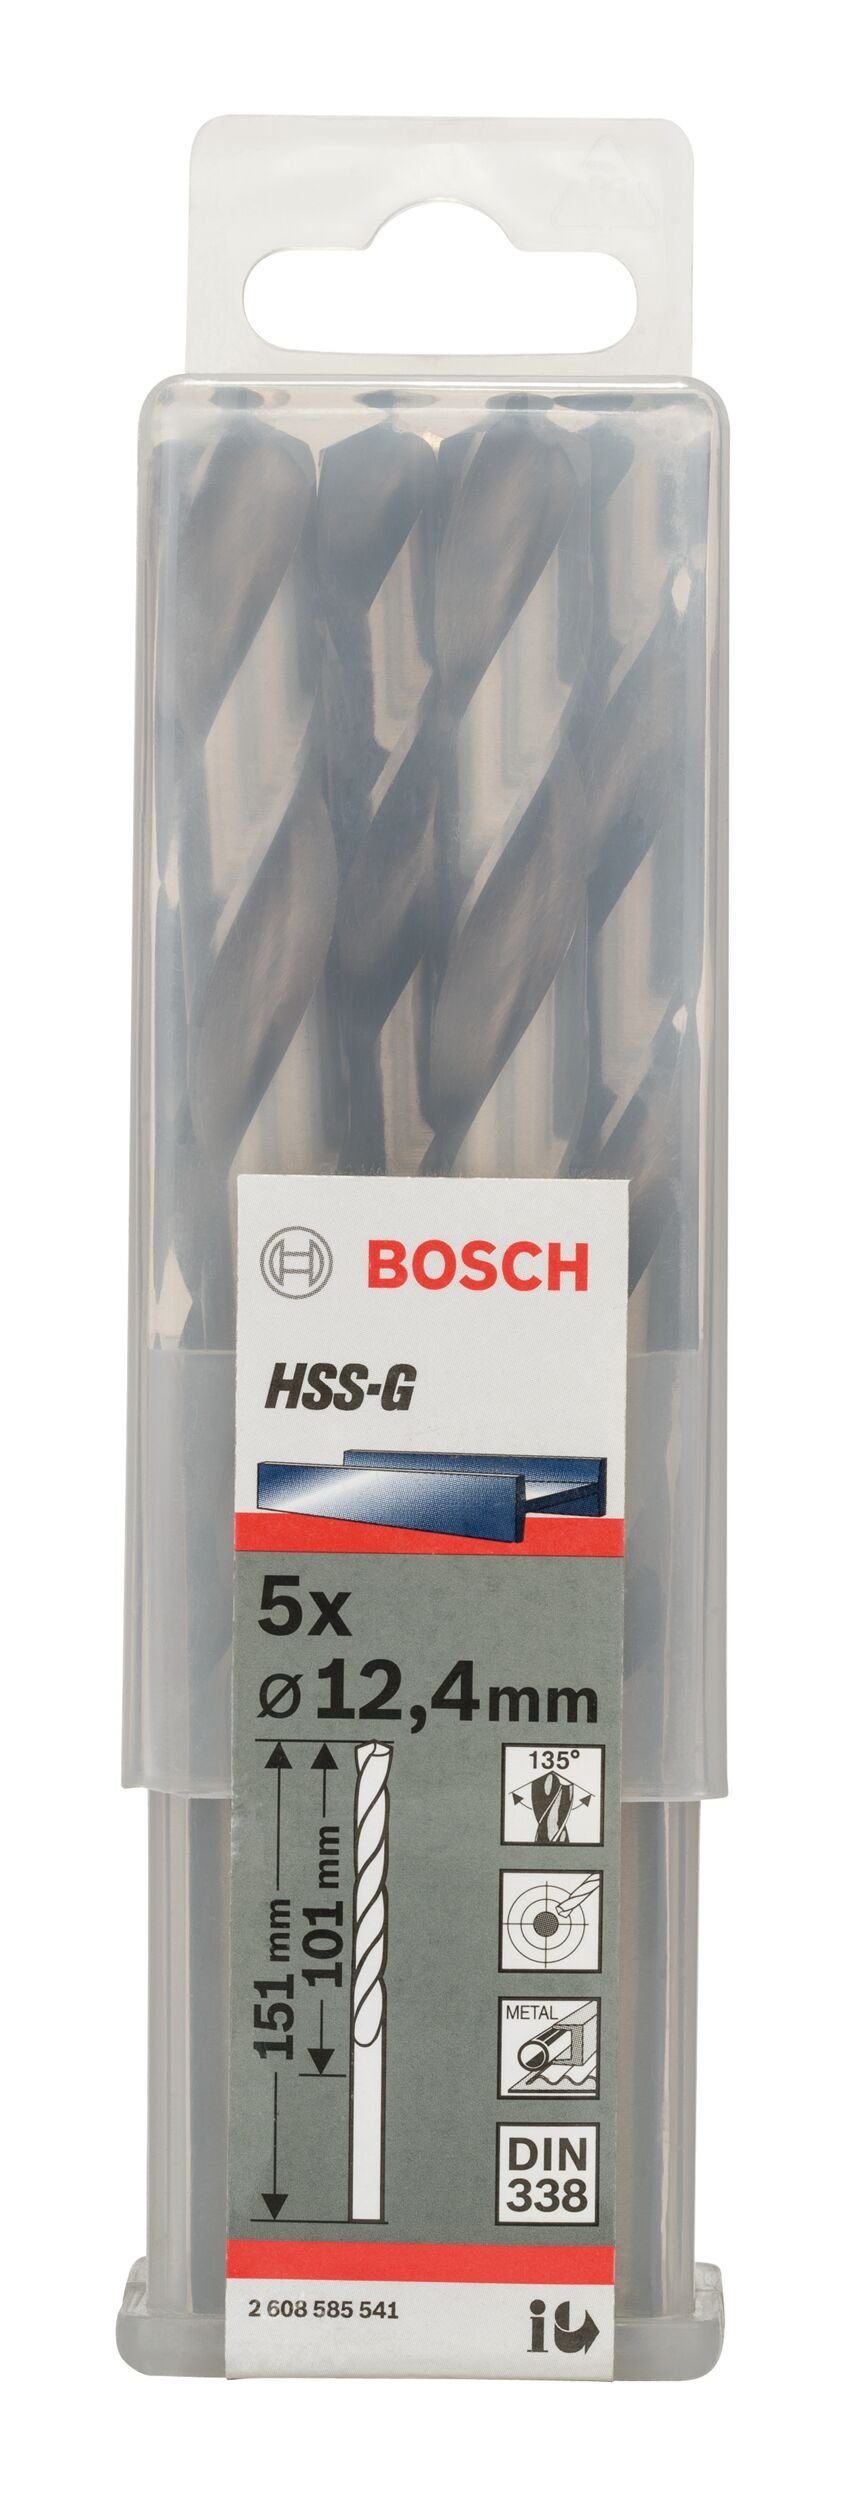 mm (5 - 151 338) - BOSCH Metallbohrer, x Stück), x HSS-G 12,4 101 5er-Pack (DIN